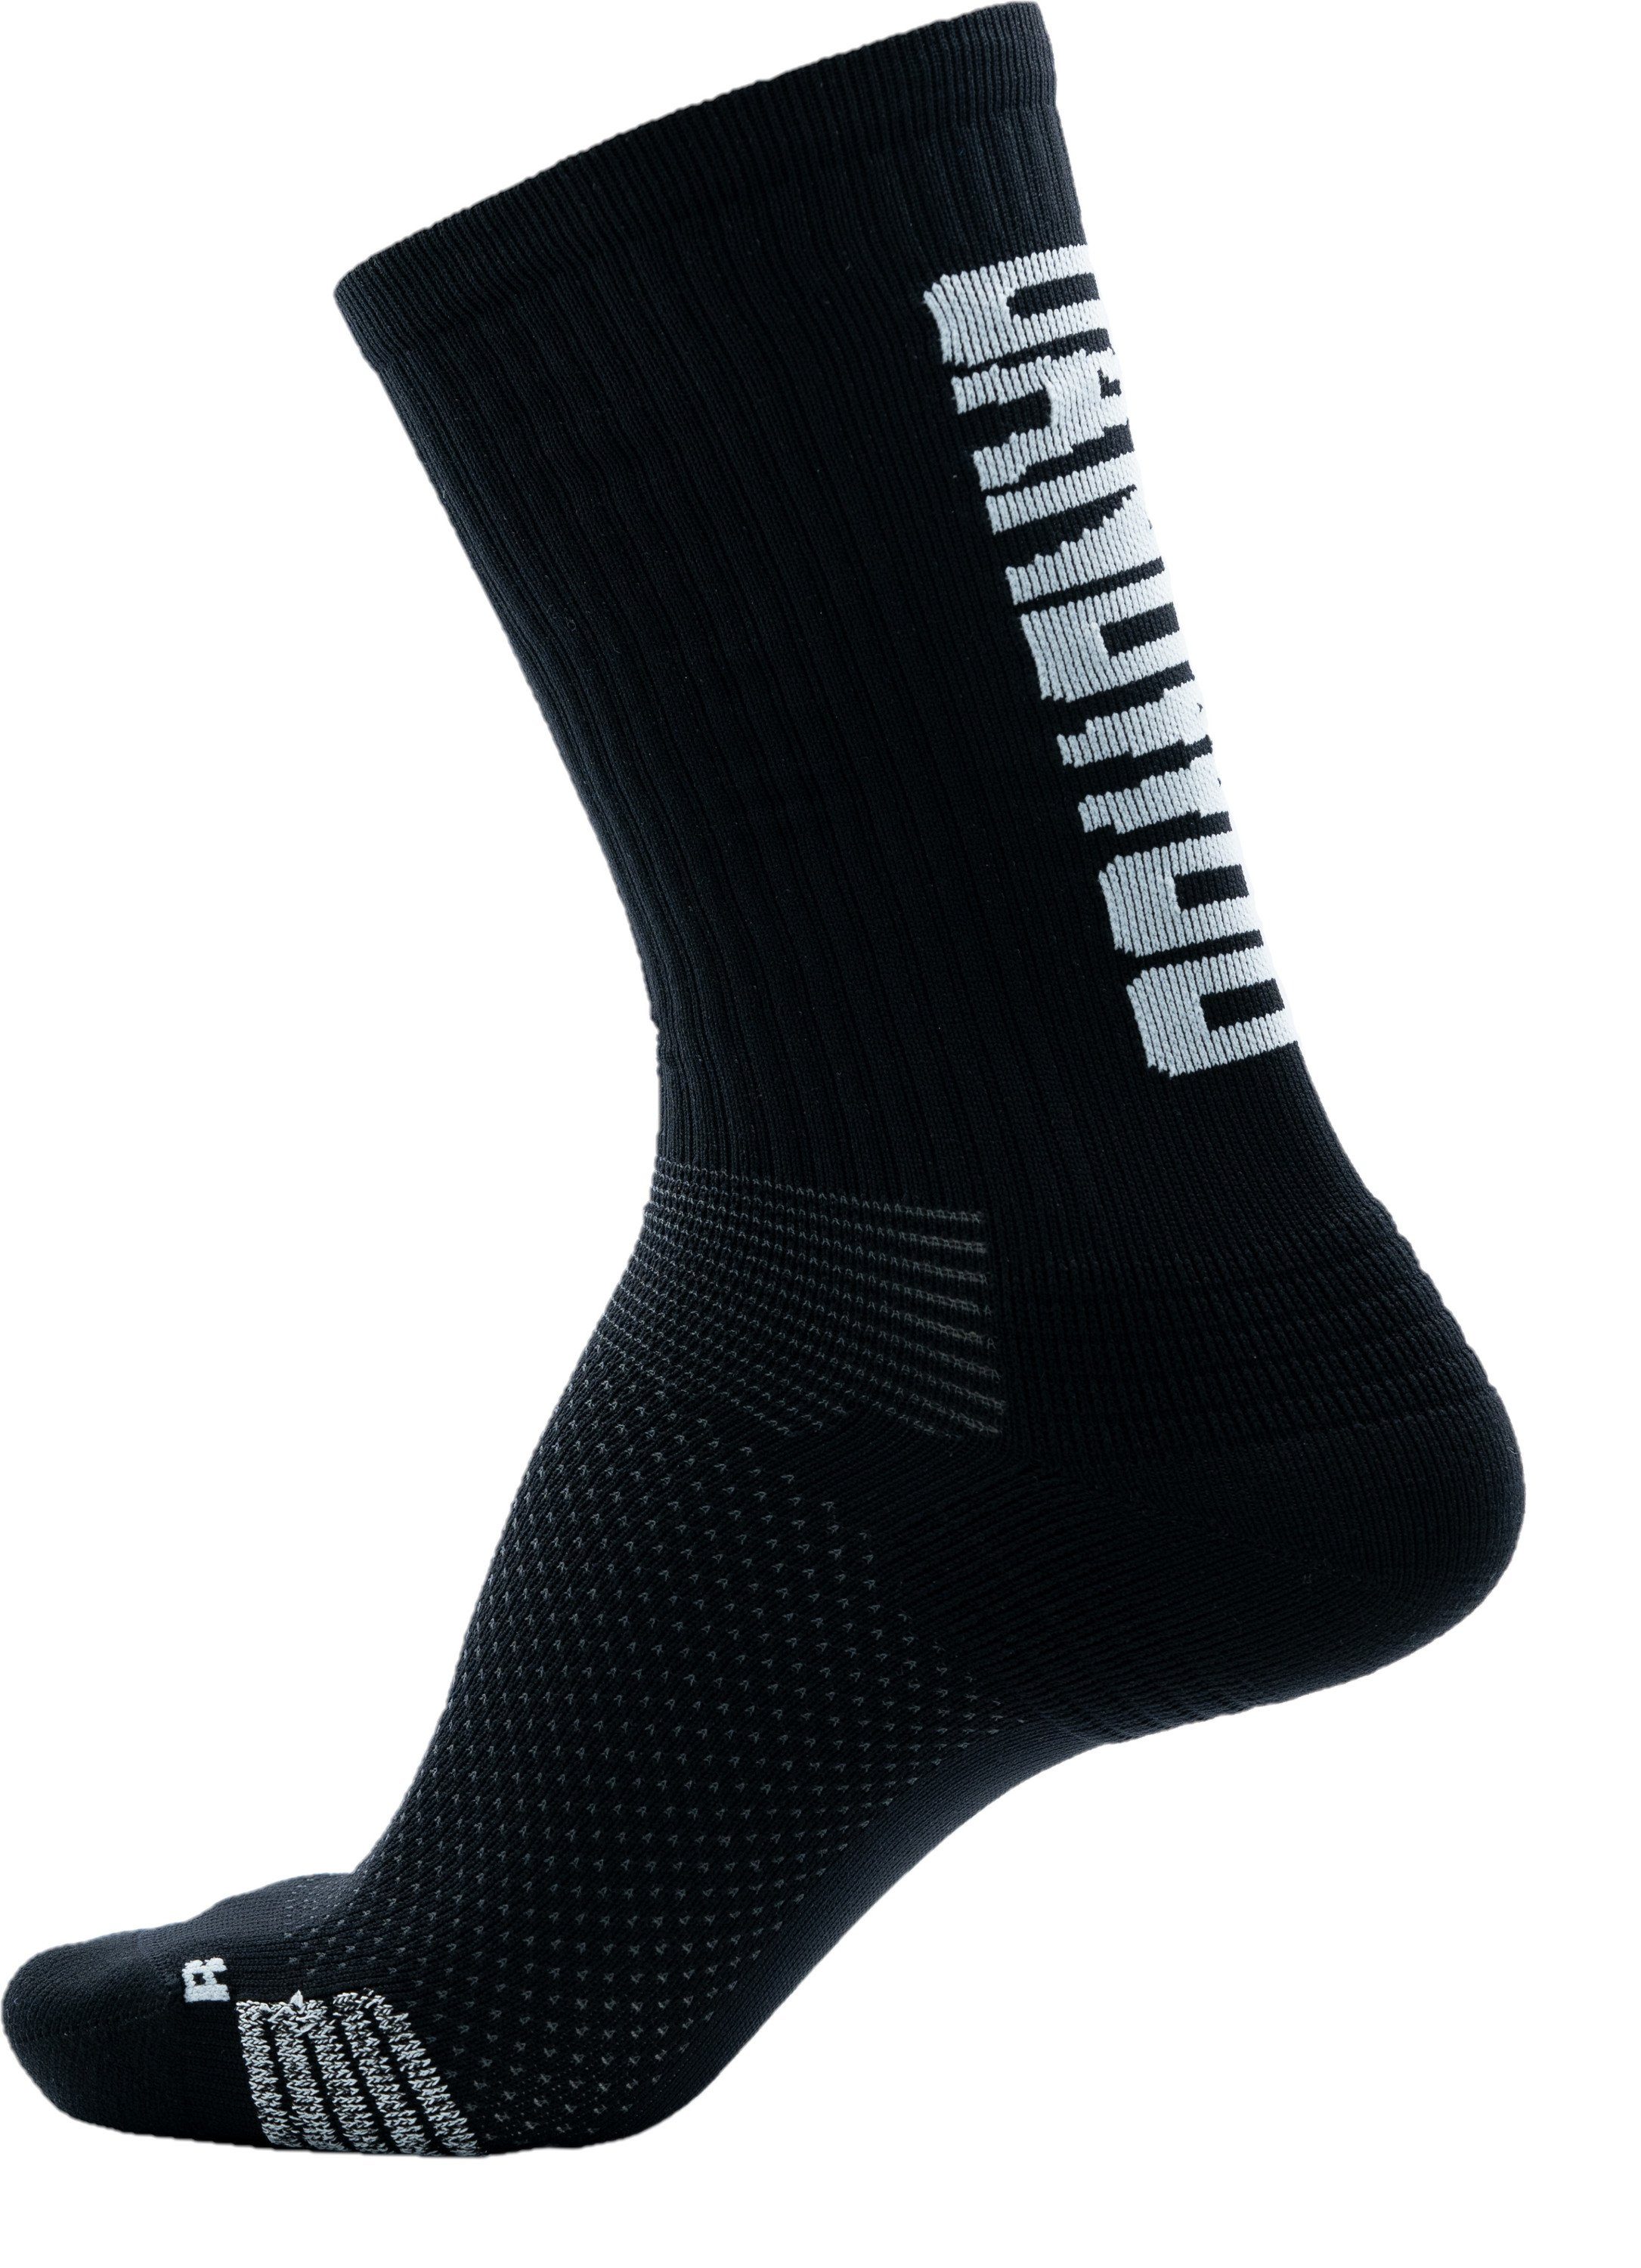 UANDWOO Funktionssocken 3701610046 UANDWOO Performance Sport Socks verschiedene Farben und Größen black